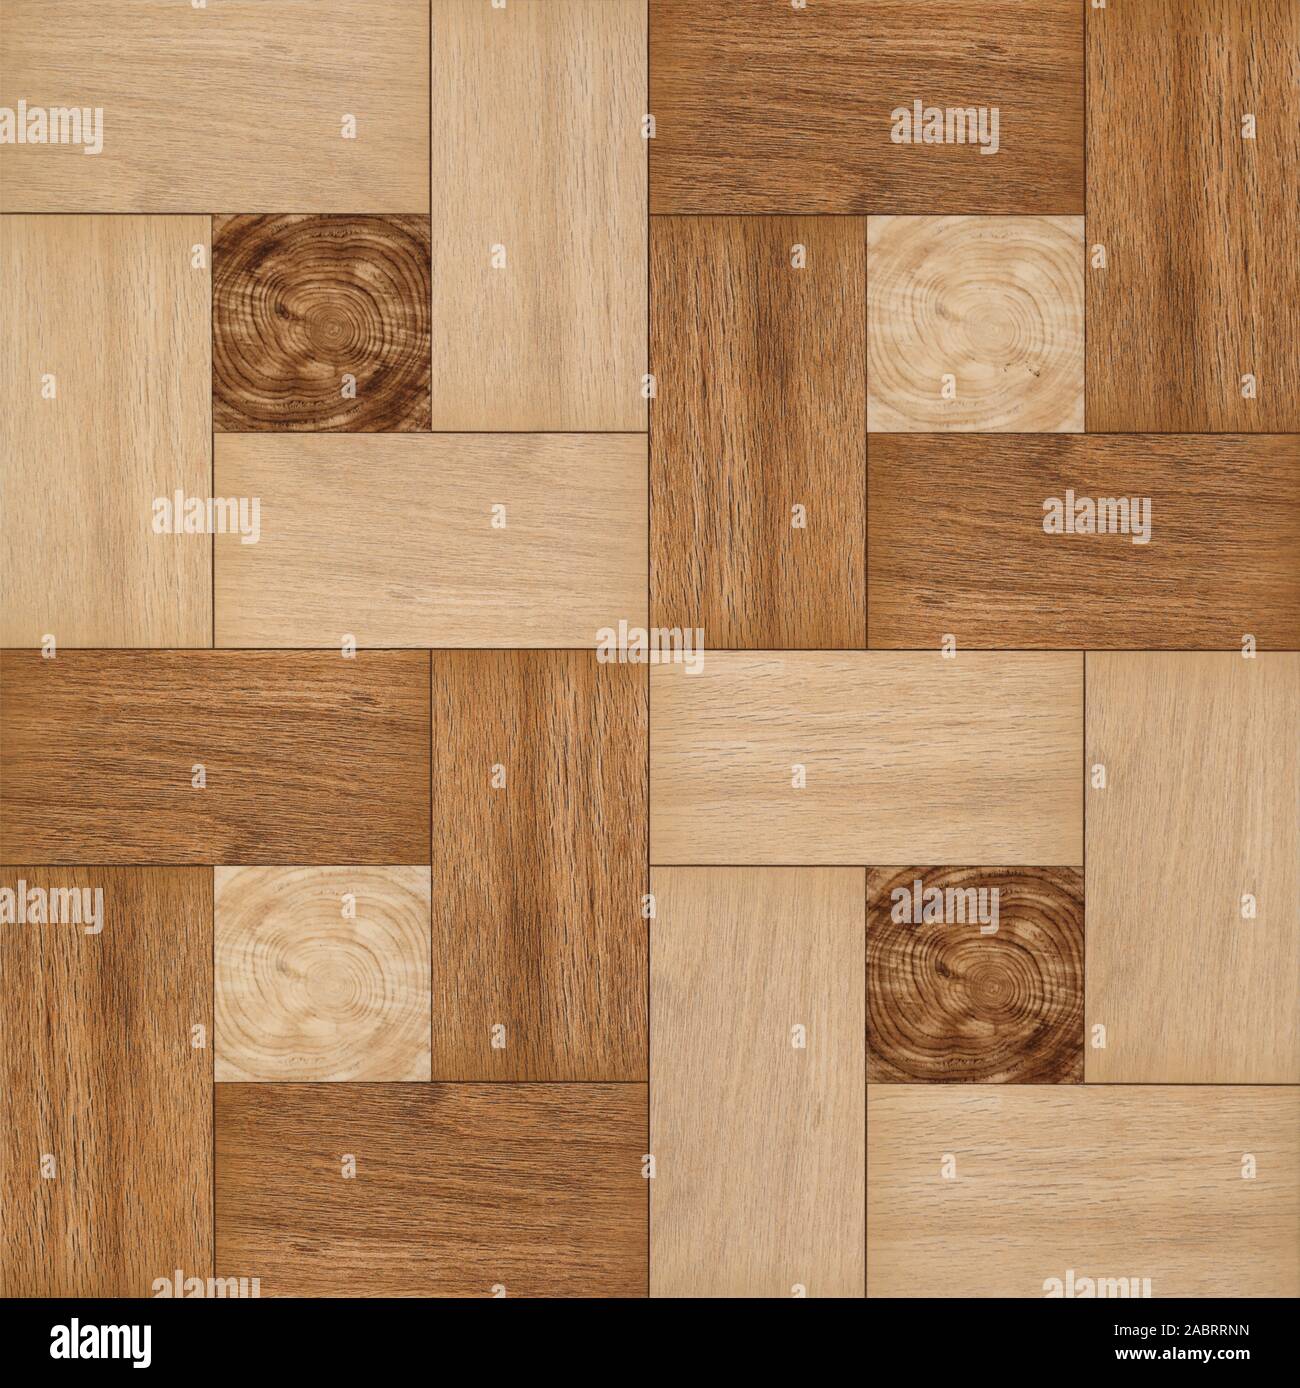 Bamboo parquet floor texture Stock Photo - Alamy